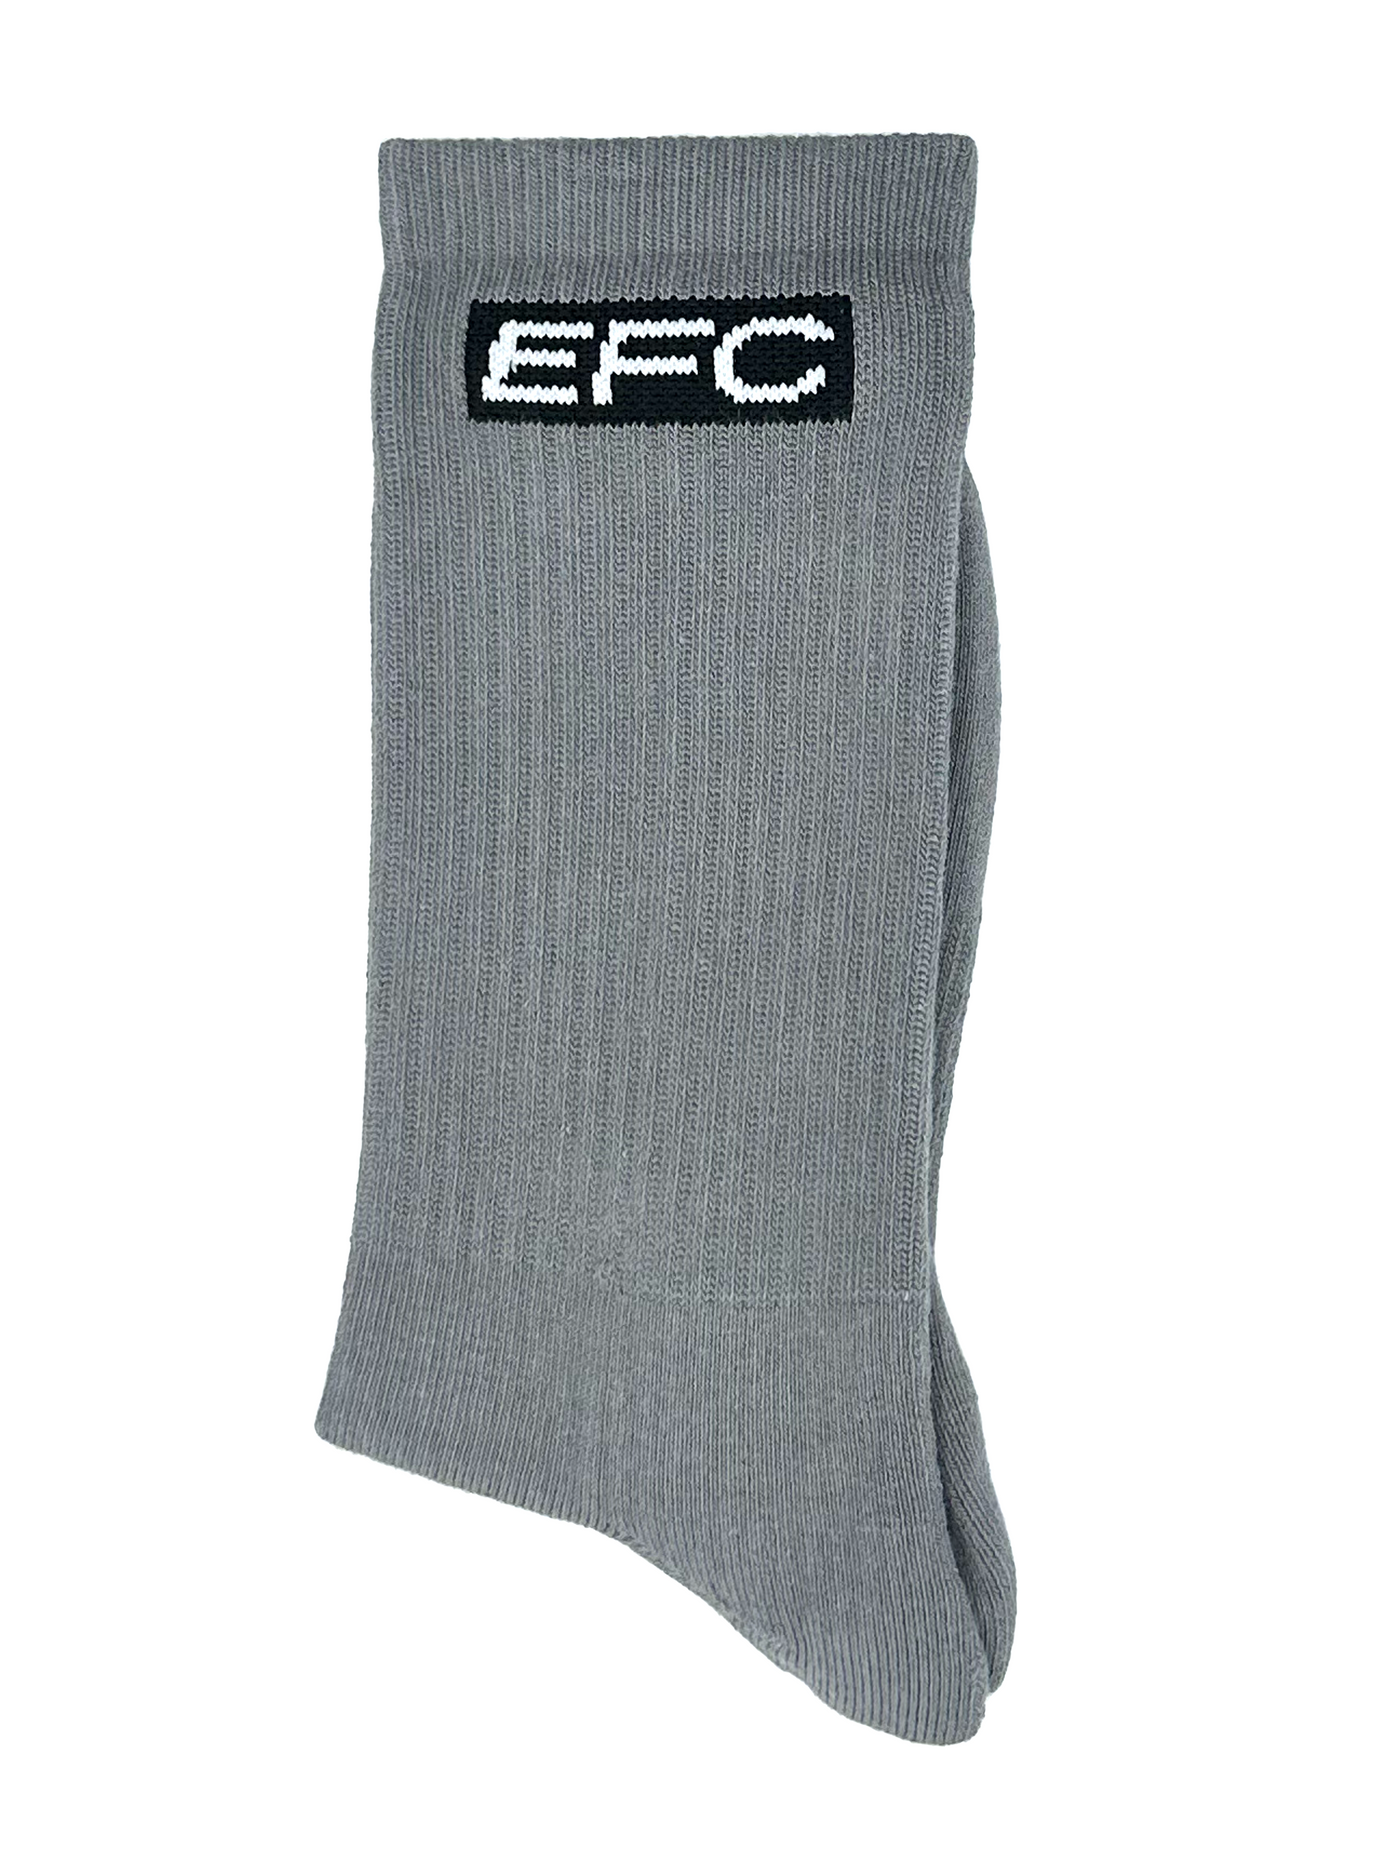 Solid Gray Socks